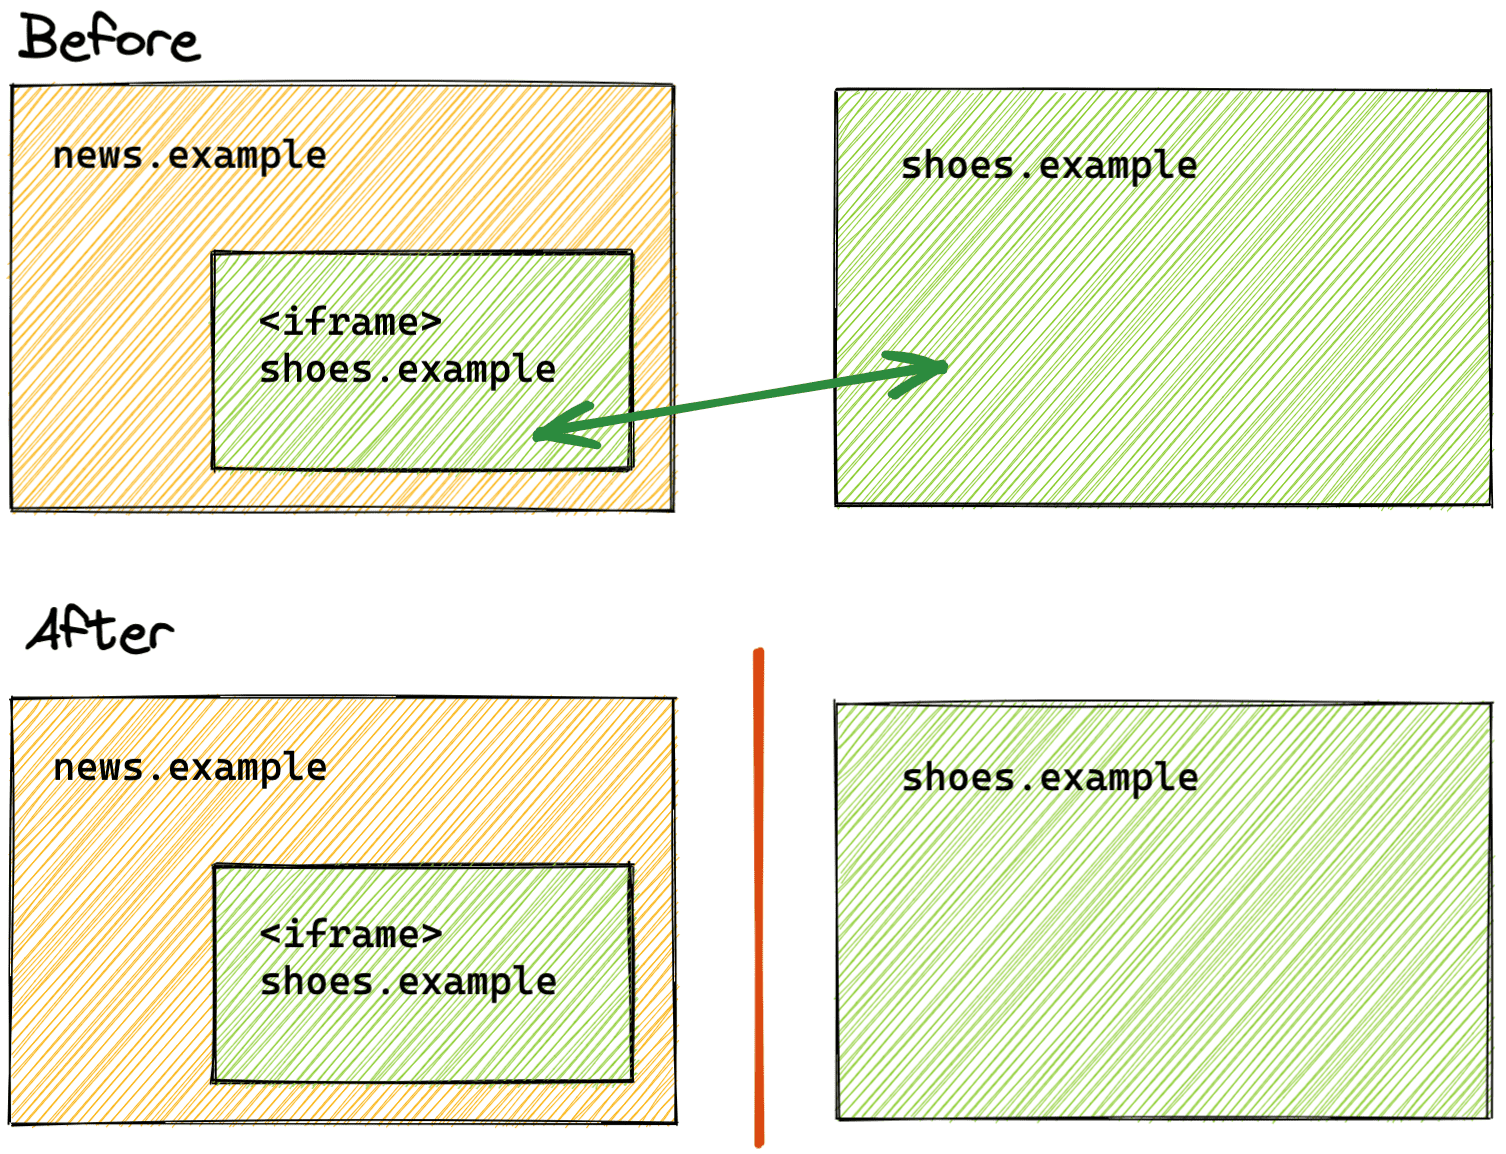 השוואה של מצב החלוקה למחיצות לפני ואחרי המצב של החלוקה למחיצות.